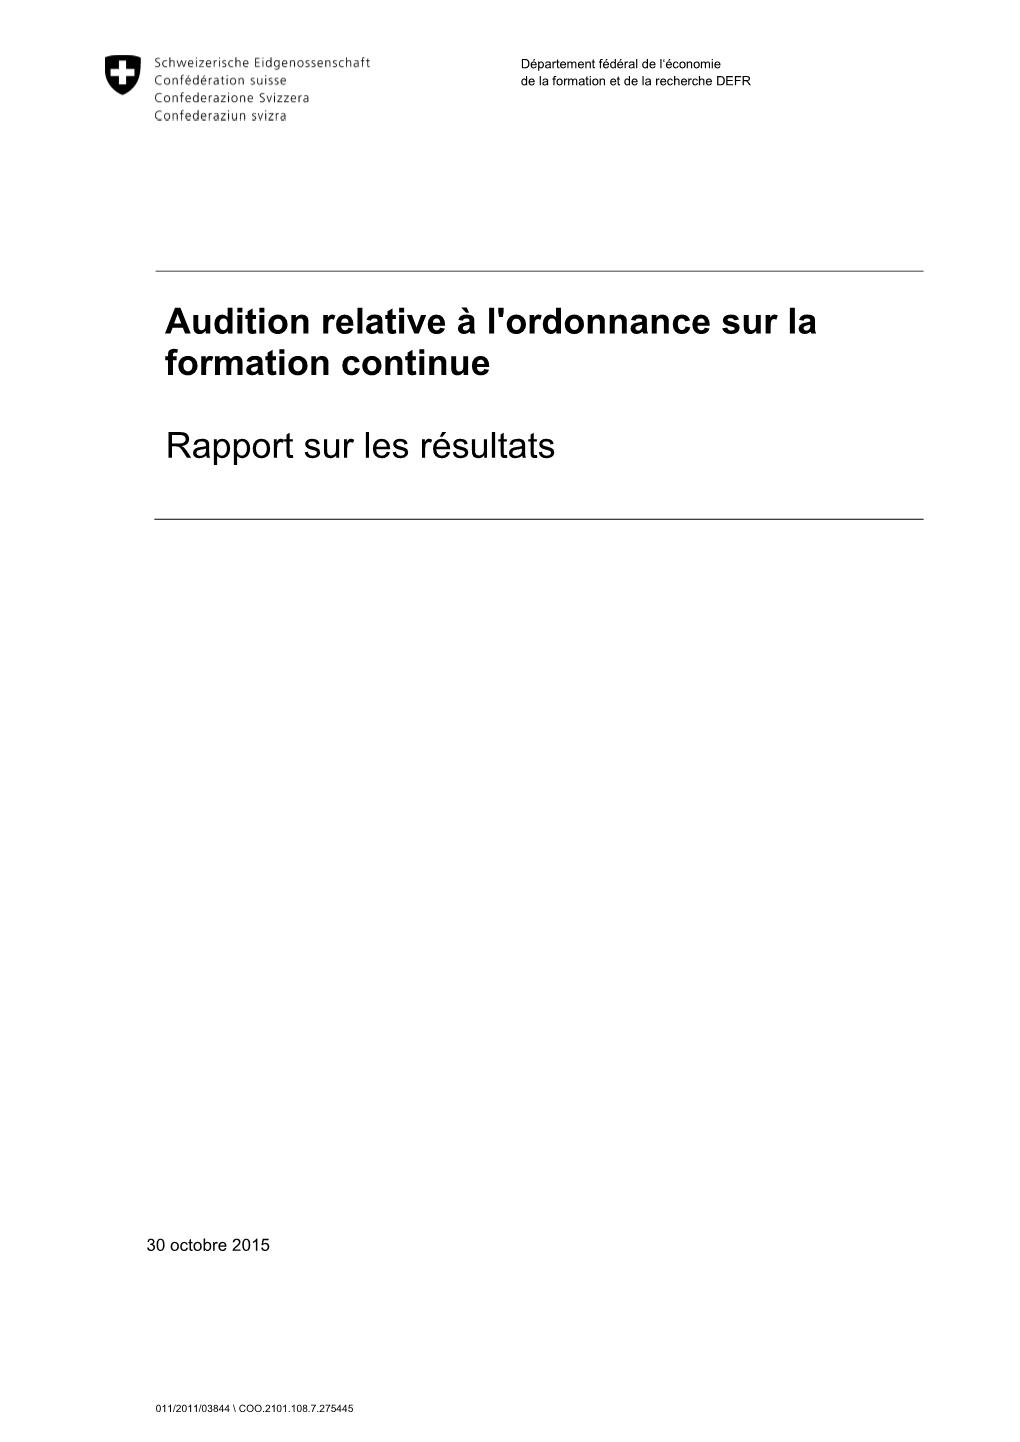 Audition Relative À L'ordonnance Sur La Formation Continue Rapport Sur Les